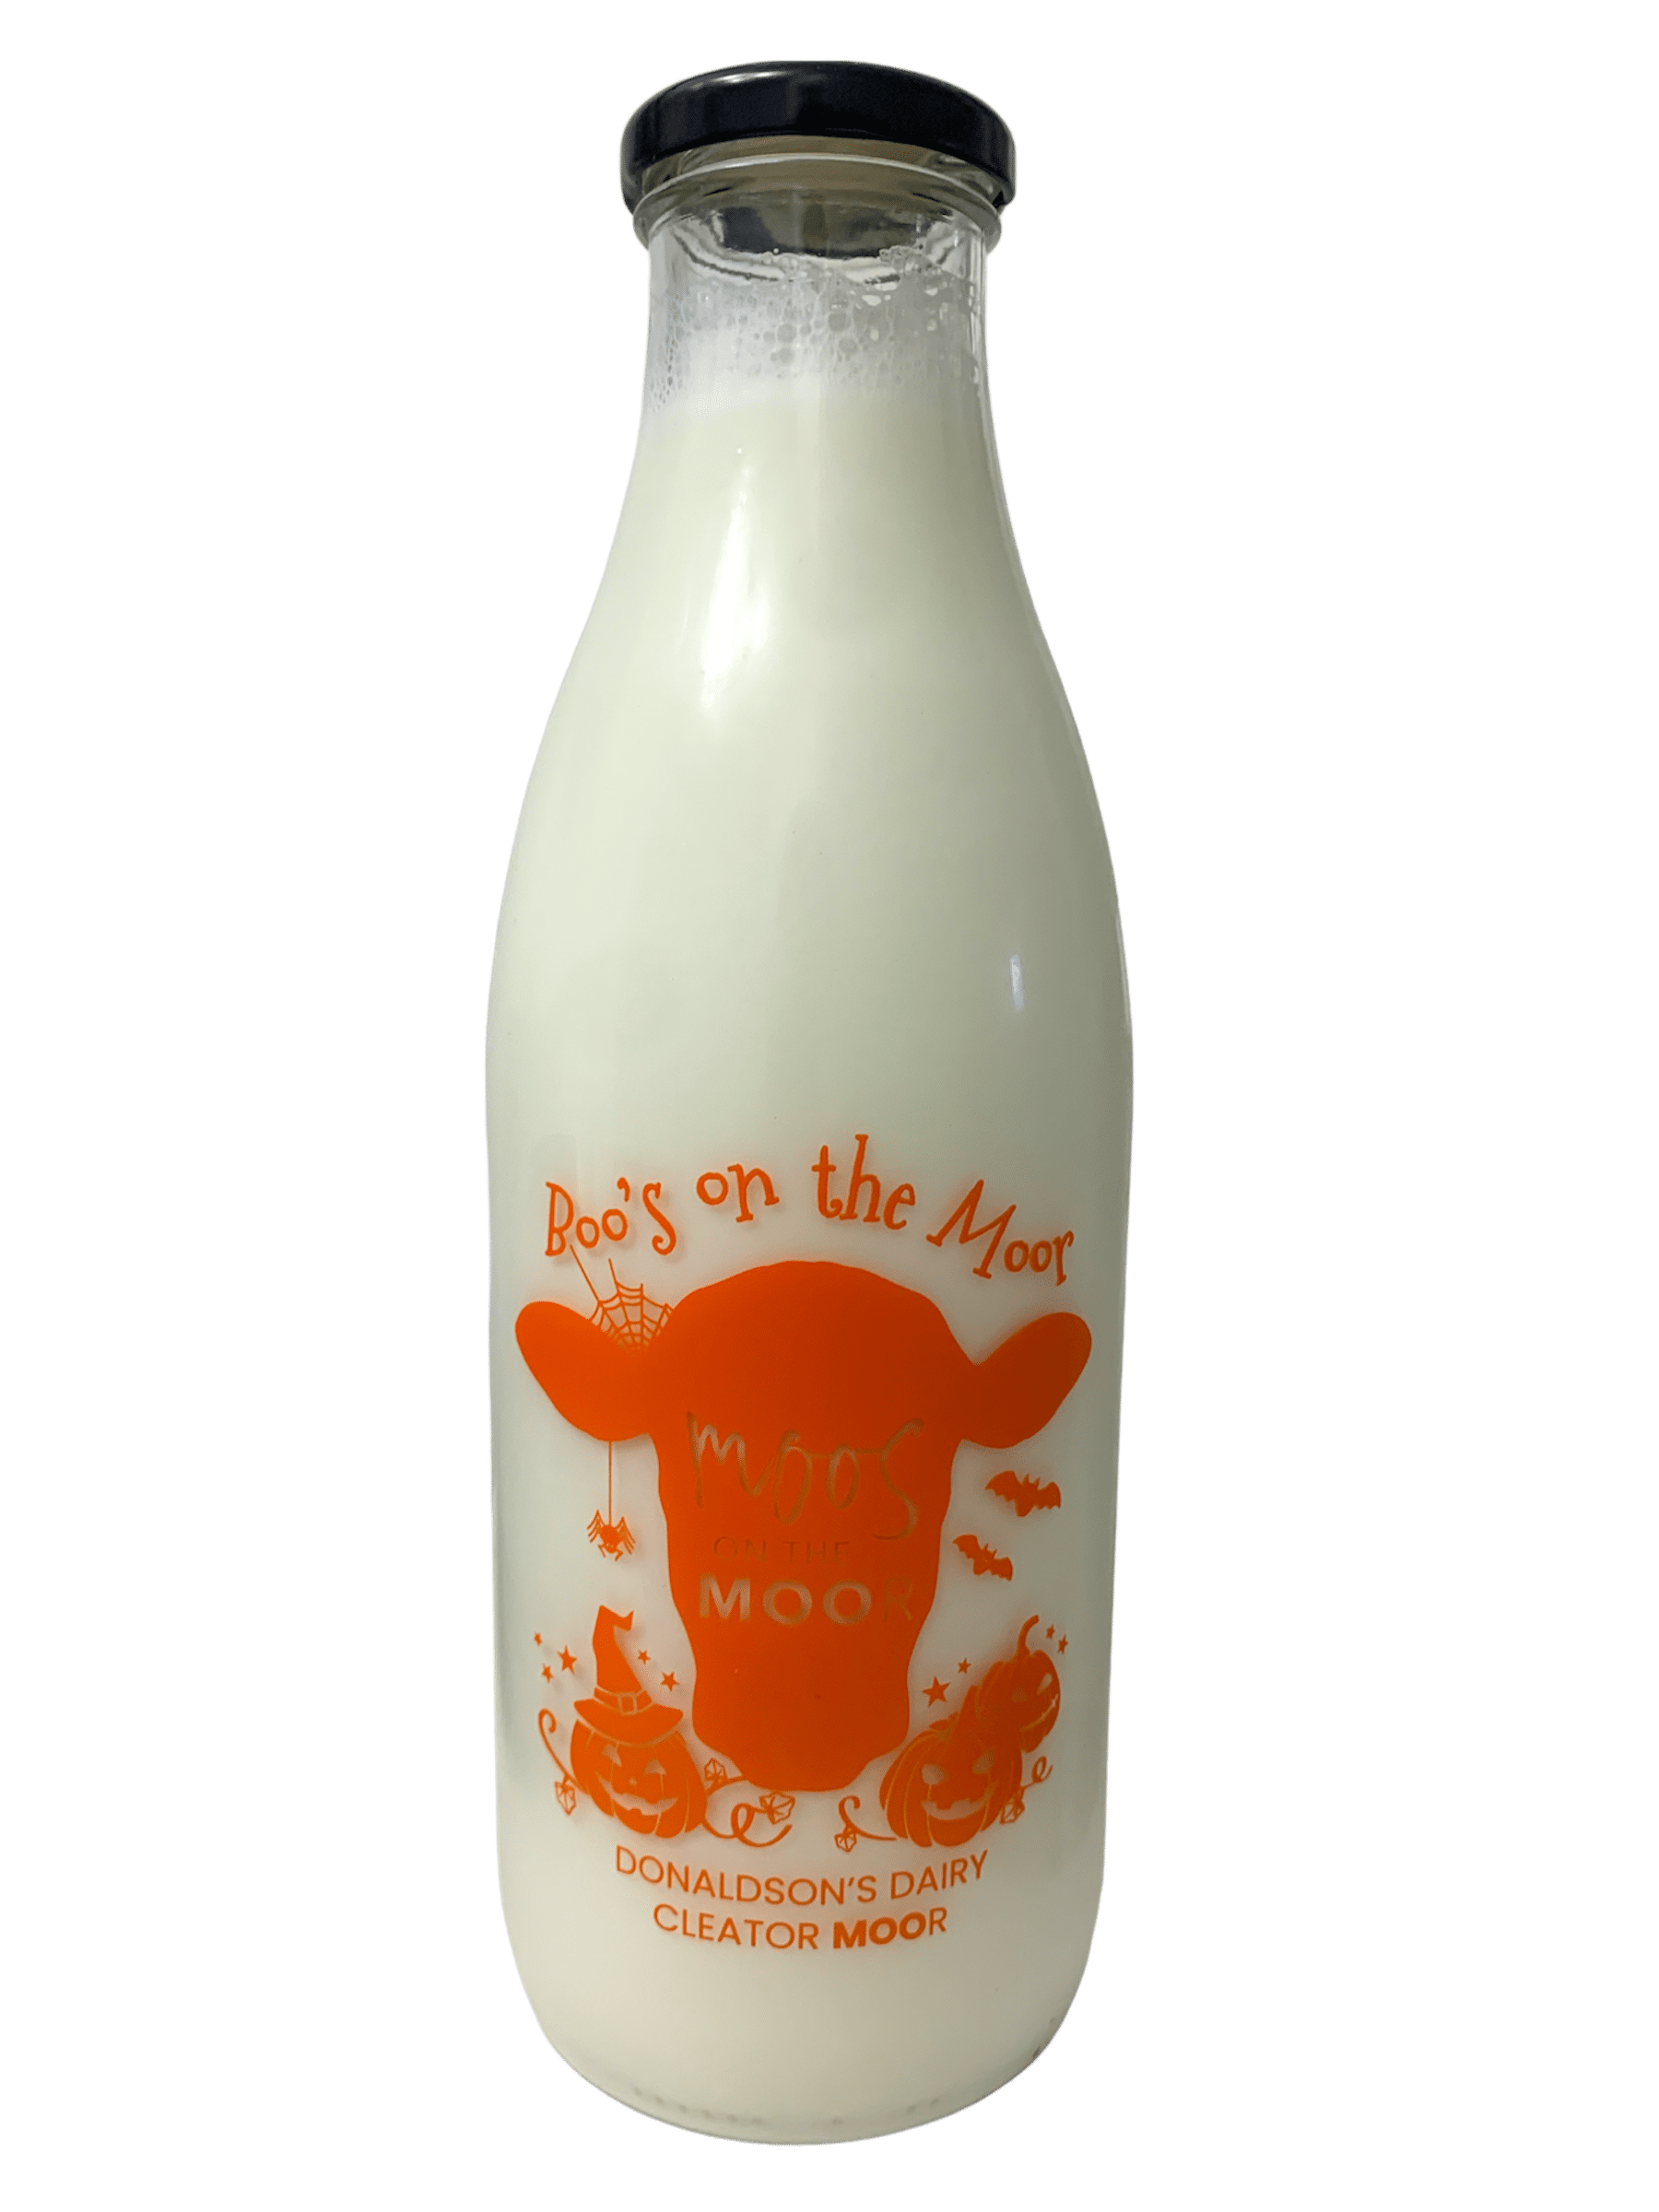 Milk From The Moor - www.Kelis.info #KelisTheBottleBank